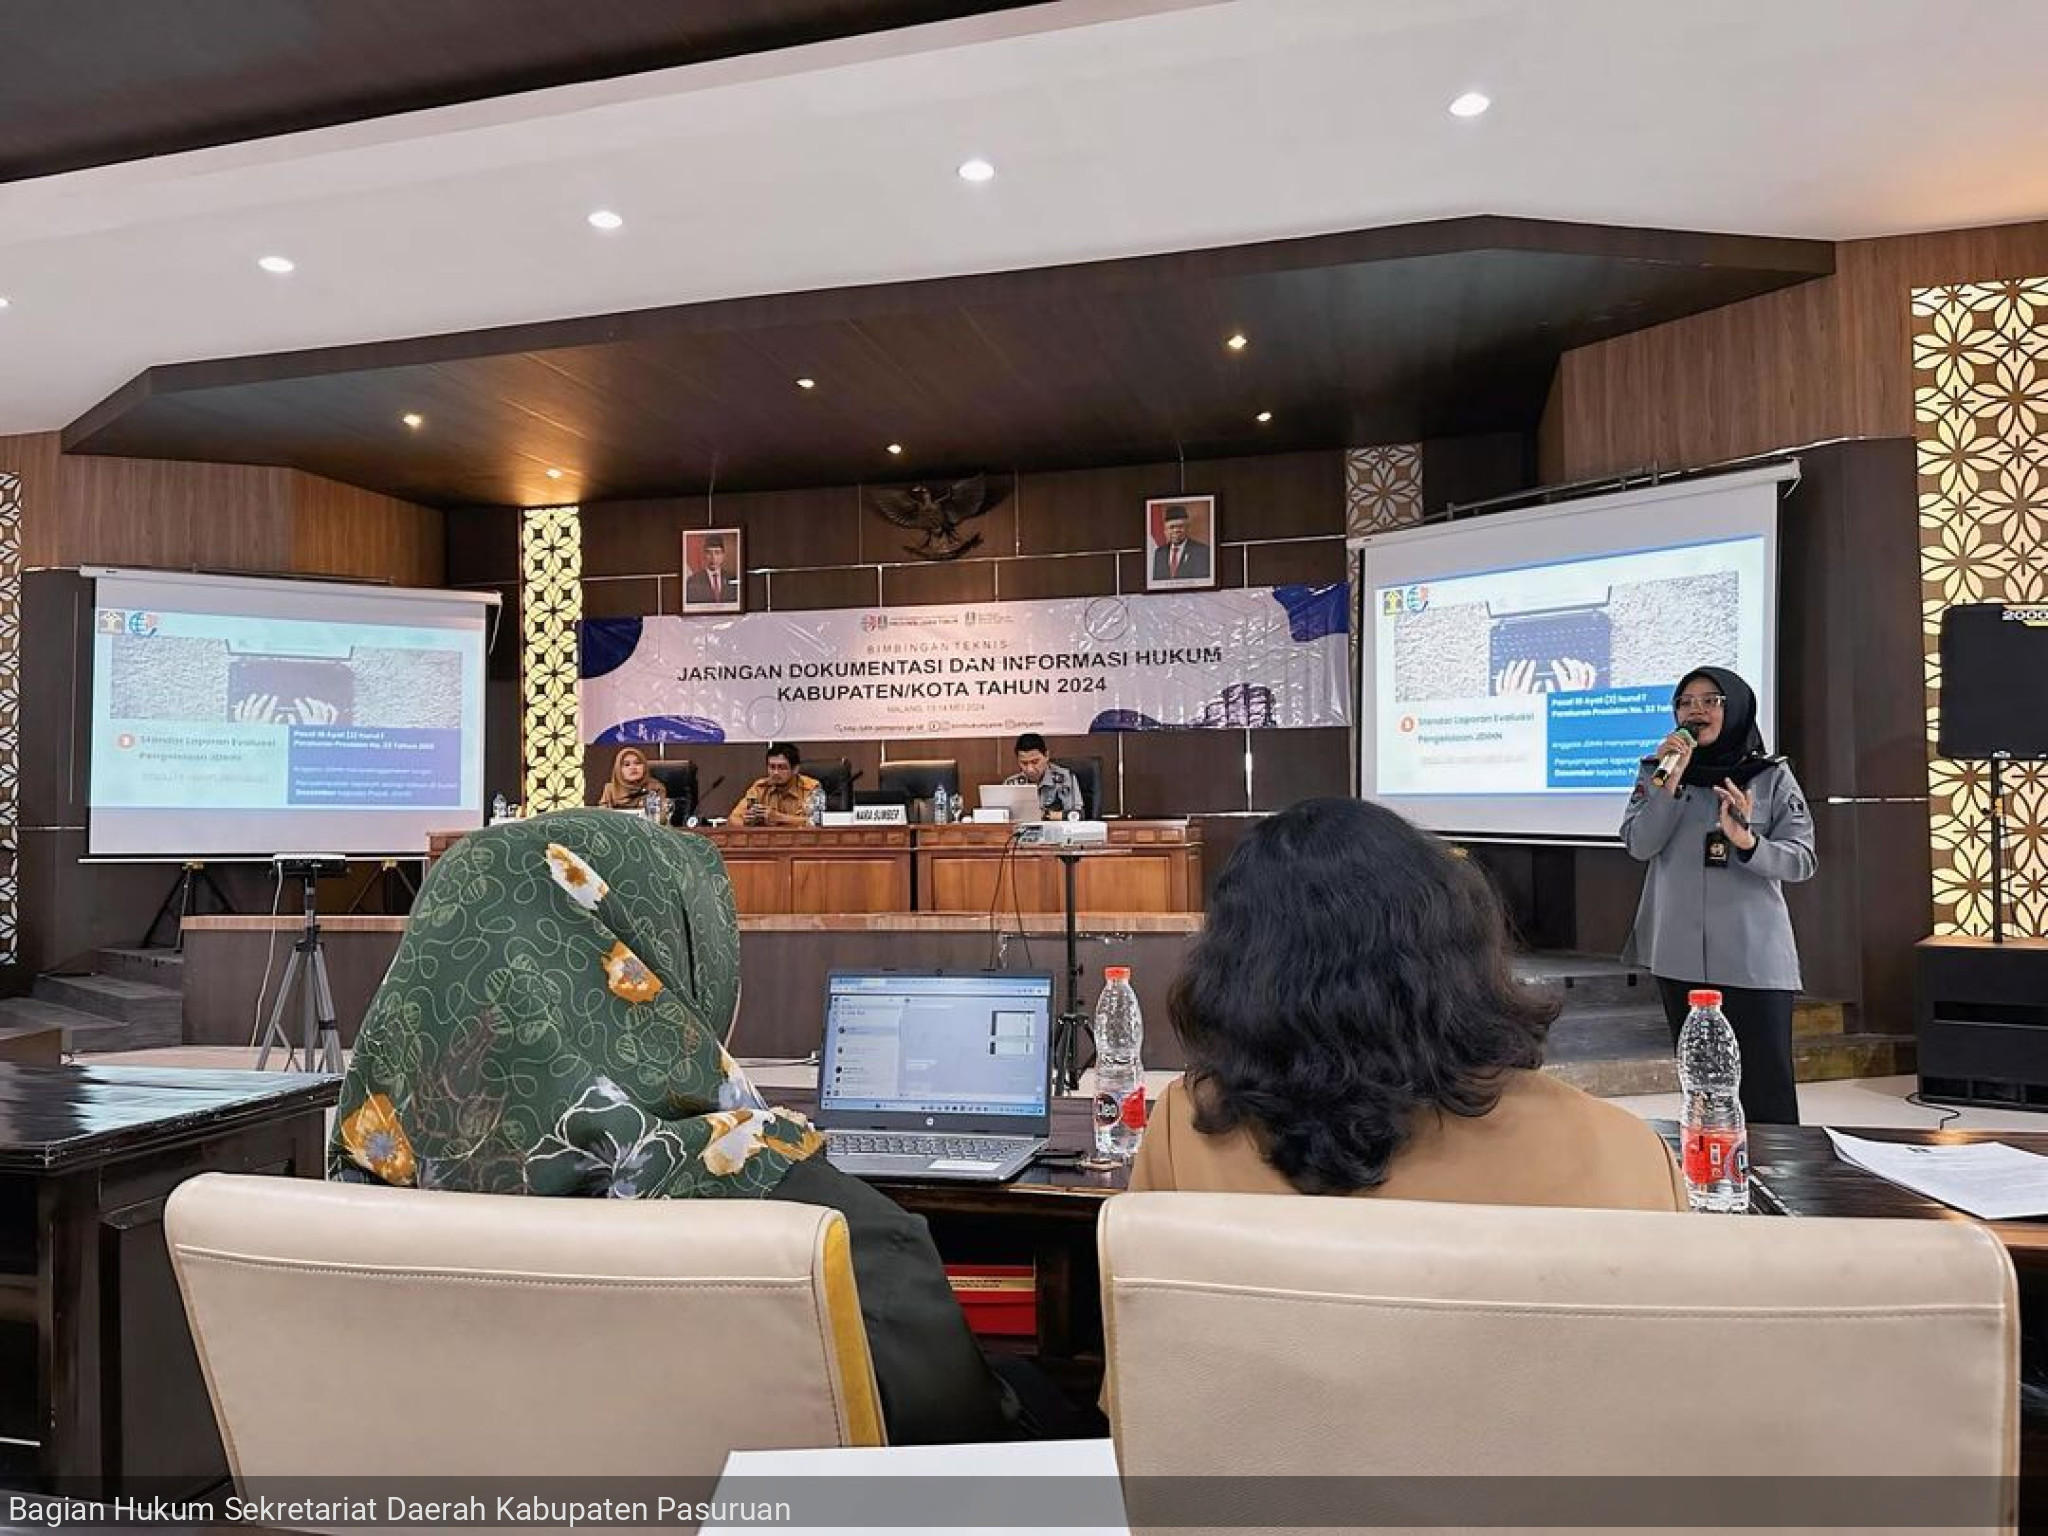 Bimbingan Teknis Jaringan Dokumentasi Dan Informasi Hukum Kabupaten/Kota Tahun 2024